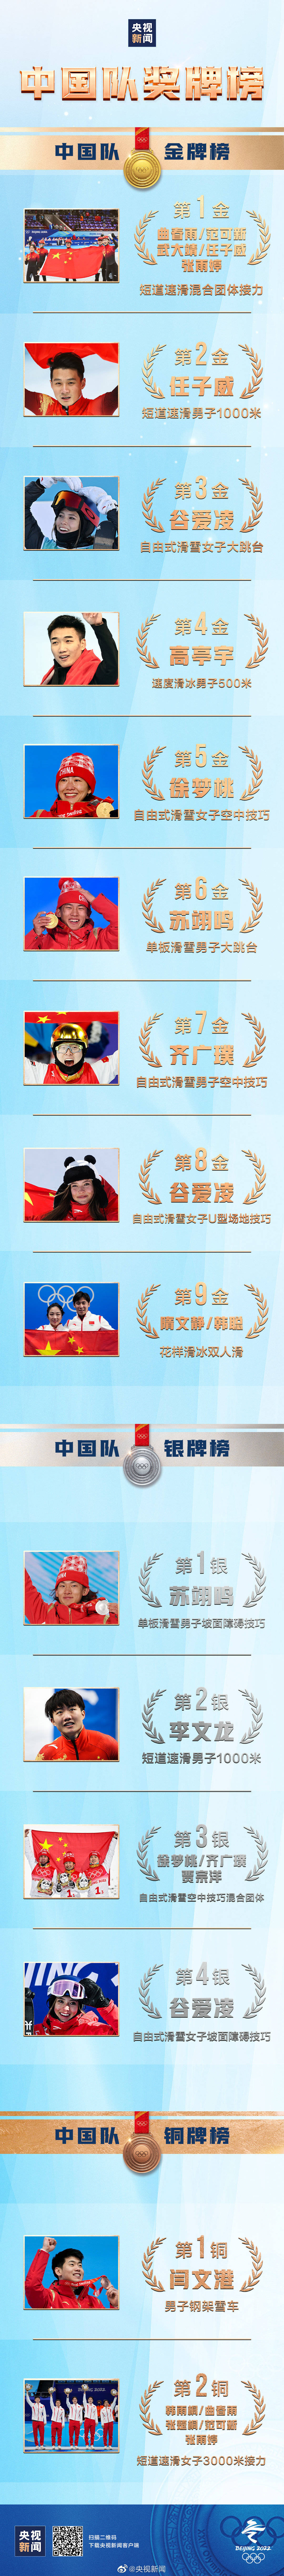 历史|你们都是最棒的！中国队15枚奖牌收官